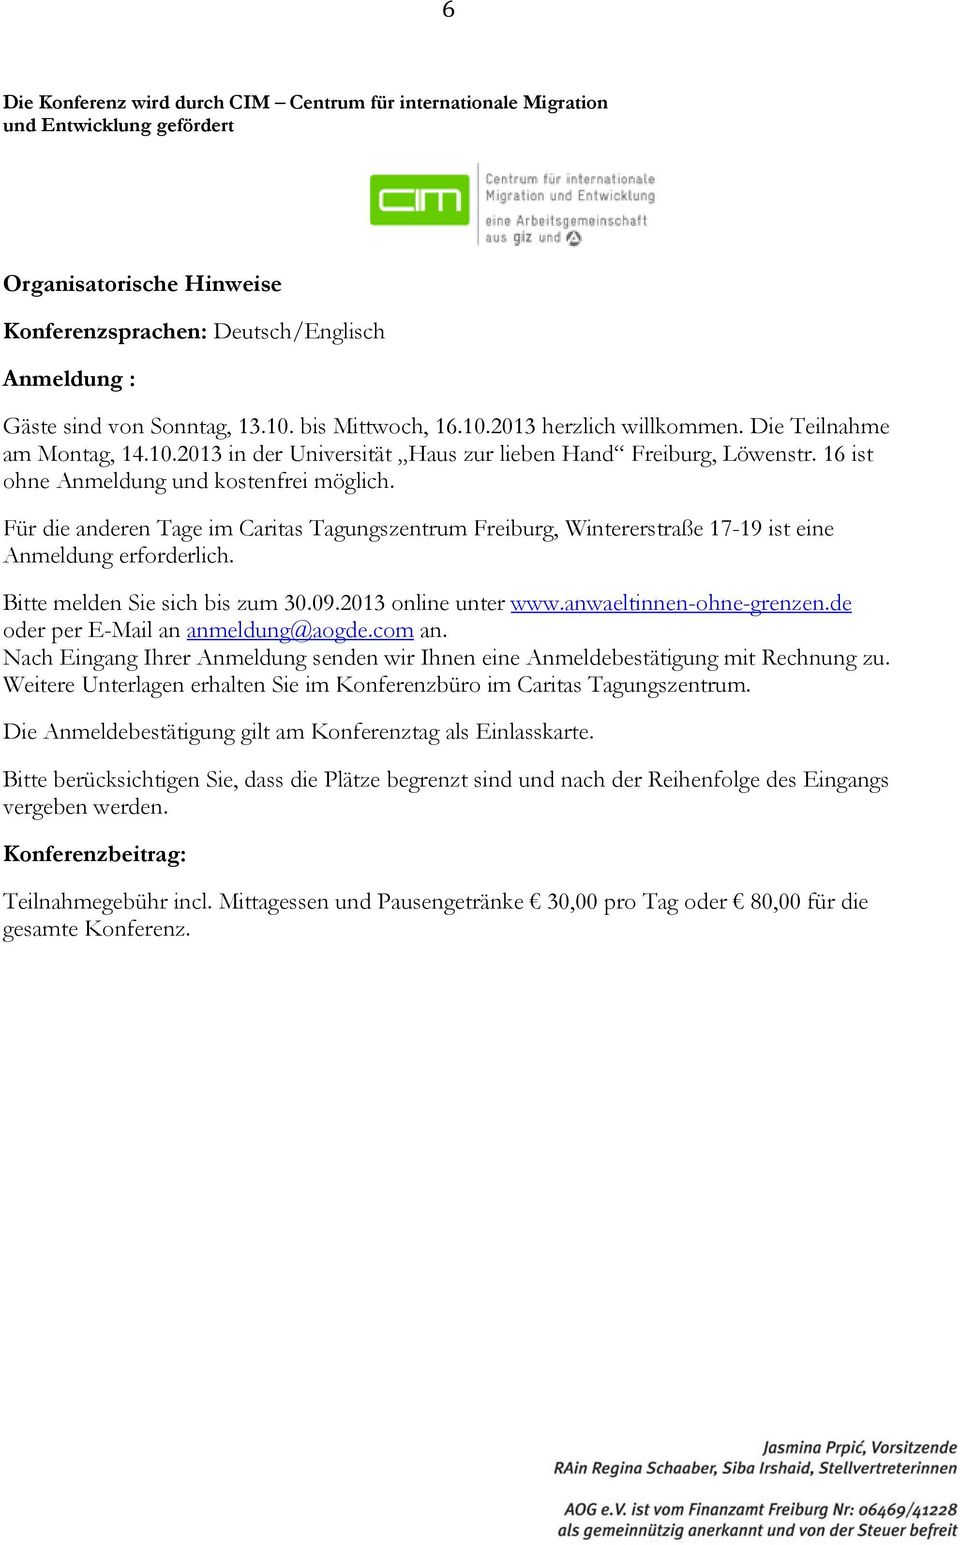 Für die anderen Tage im Caritas Tagungszentrum Freiburg, Wintererstraße 17-19 ist eine Anmeldung erforderlich. Bitte melden Sie sich bis zum 30.09.2013 online unter www.anwaeltinnen-ohne-grenzen.